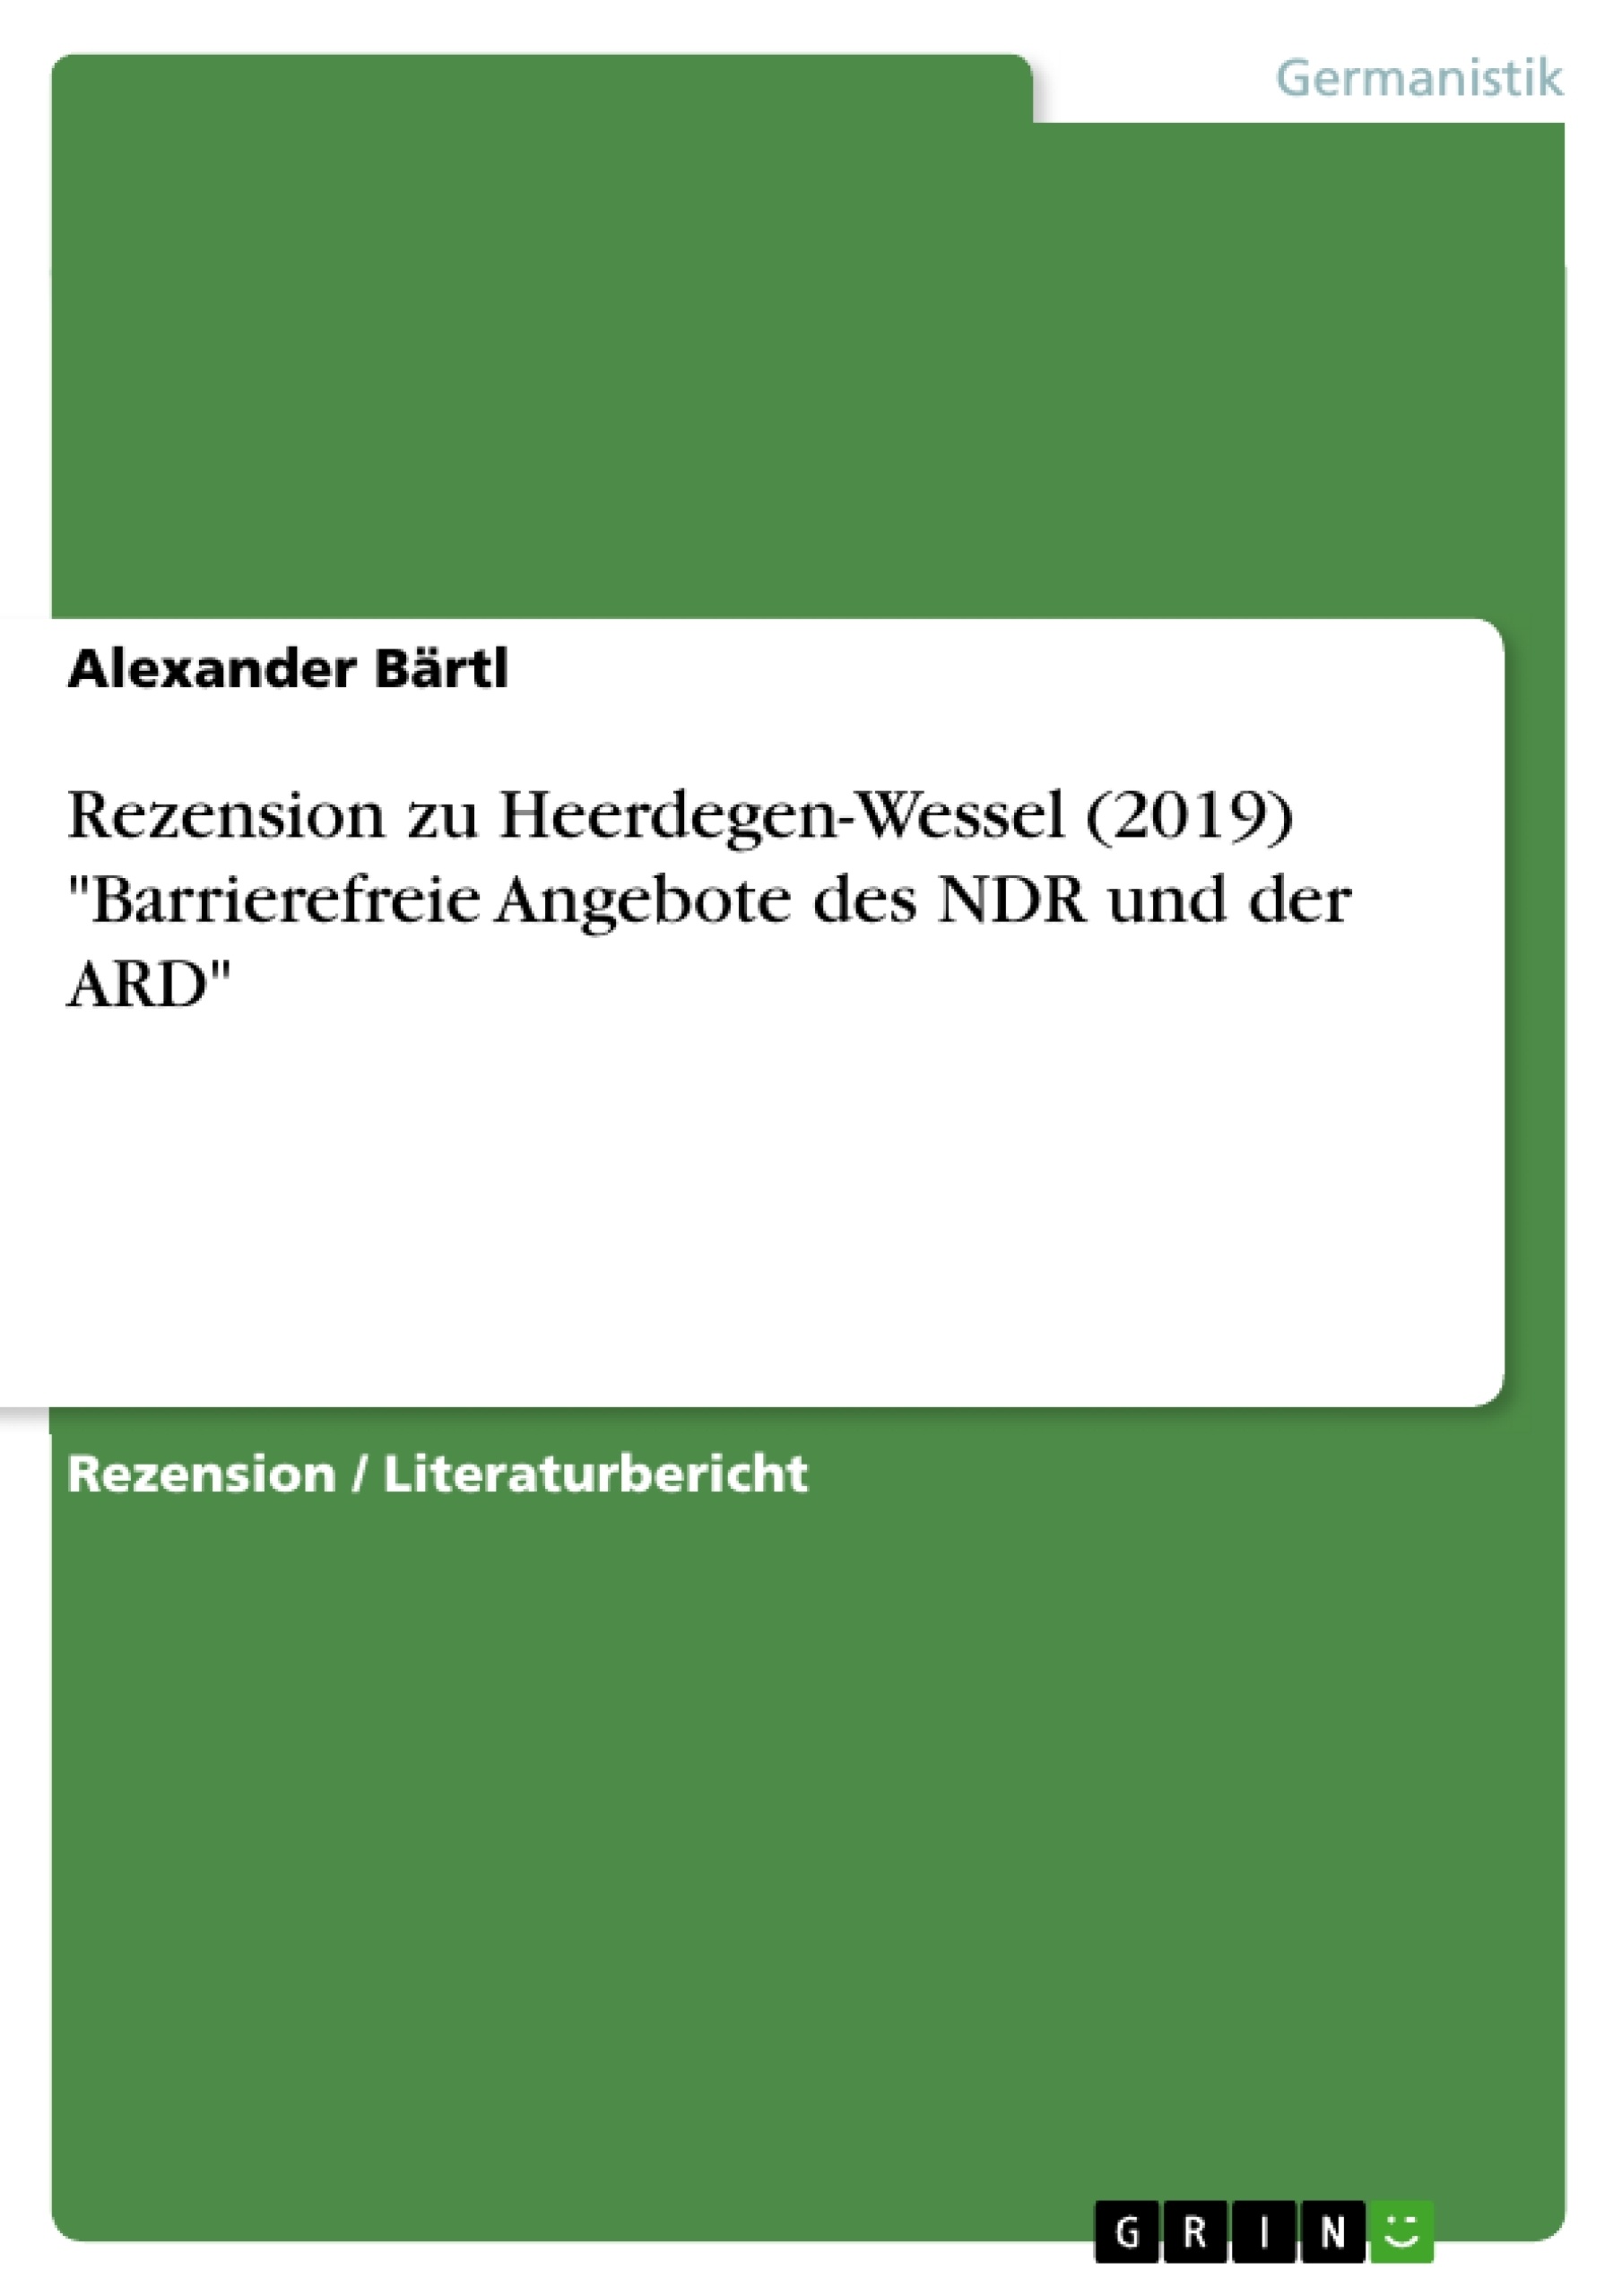 Titel: Rezension zu Heerdegen-Wessel (2019) "Barrierefreie Angebote des NDR und der ARD"